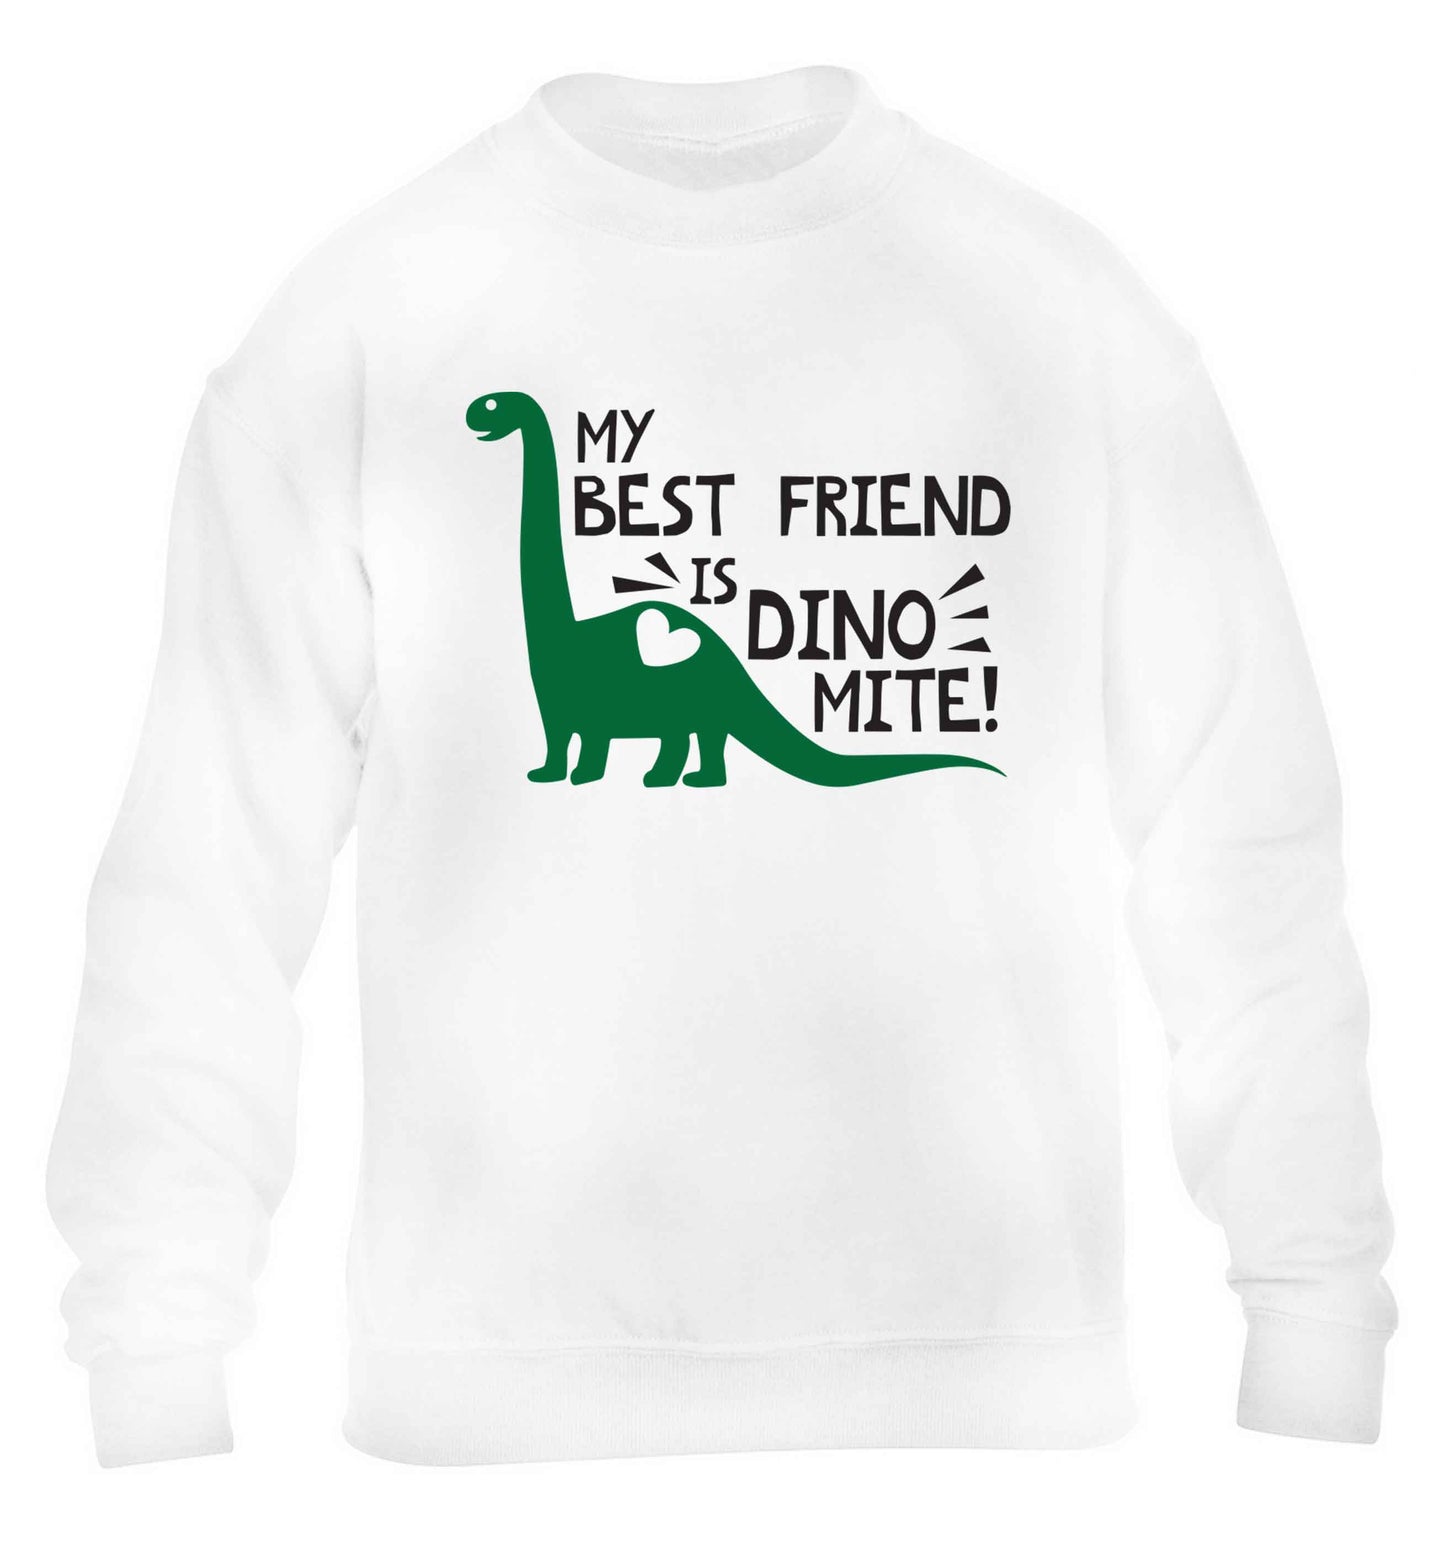 My best friend is dinomite! children's white sweater 12-13 Years